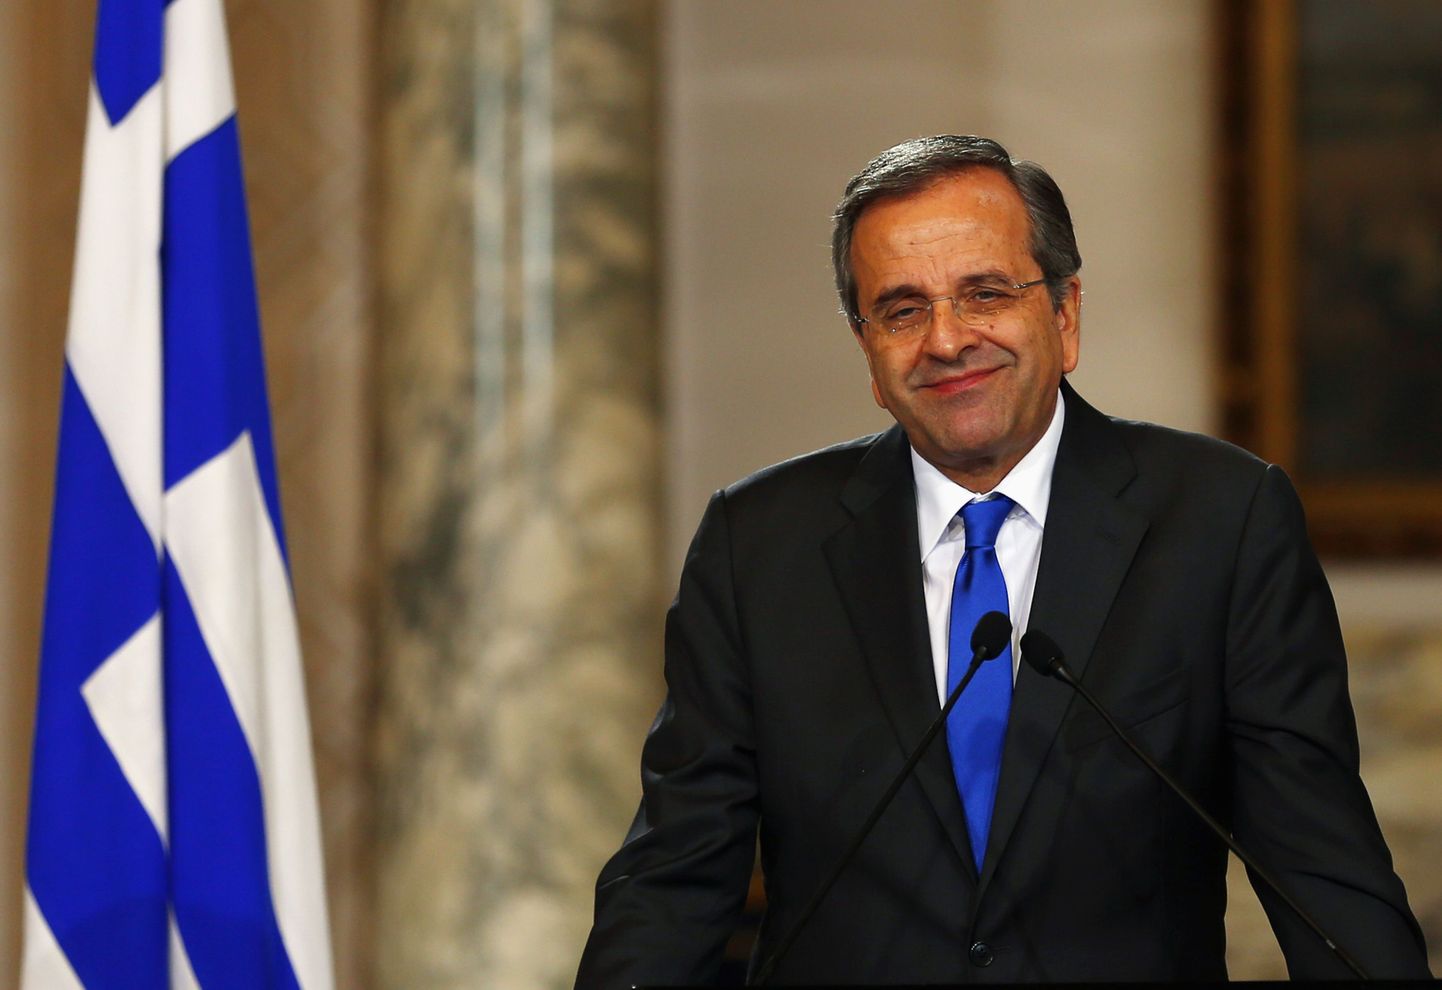 Kreeka peaminister Antonis Samaras